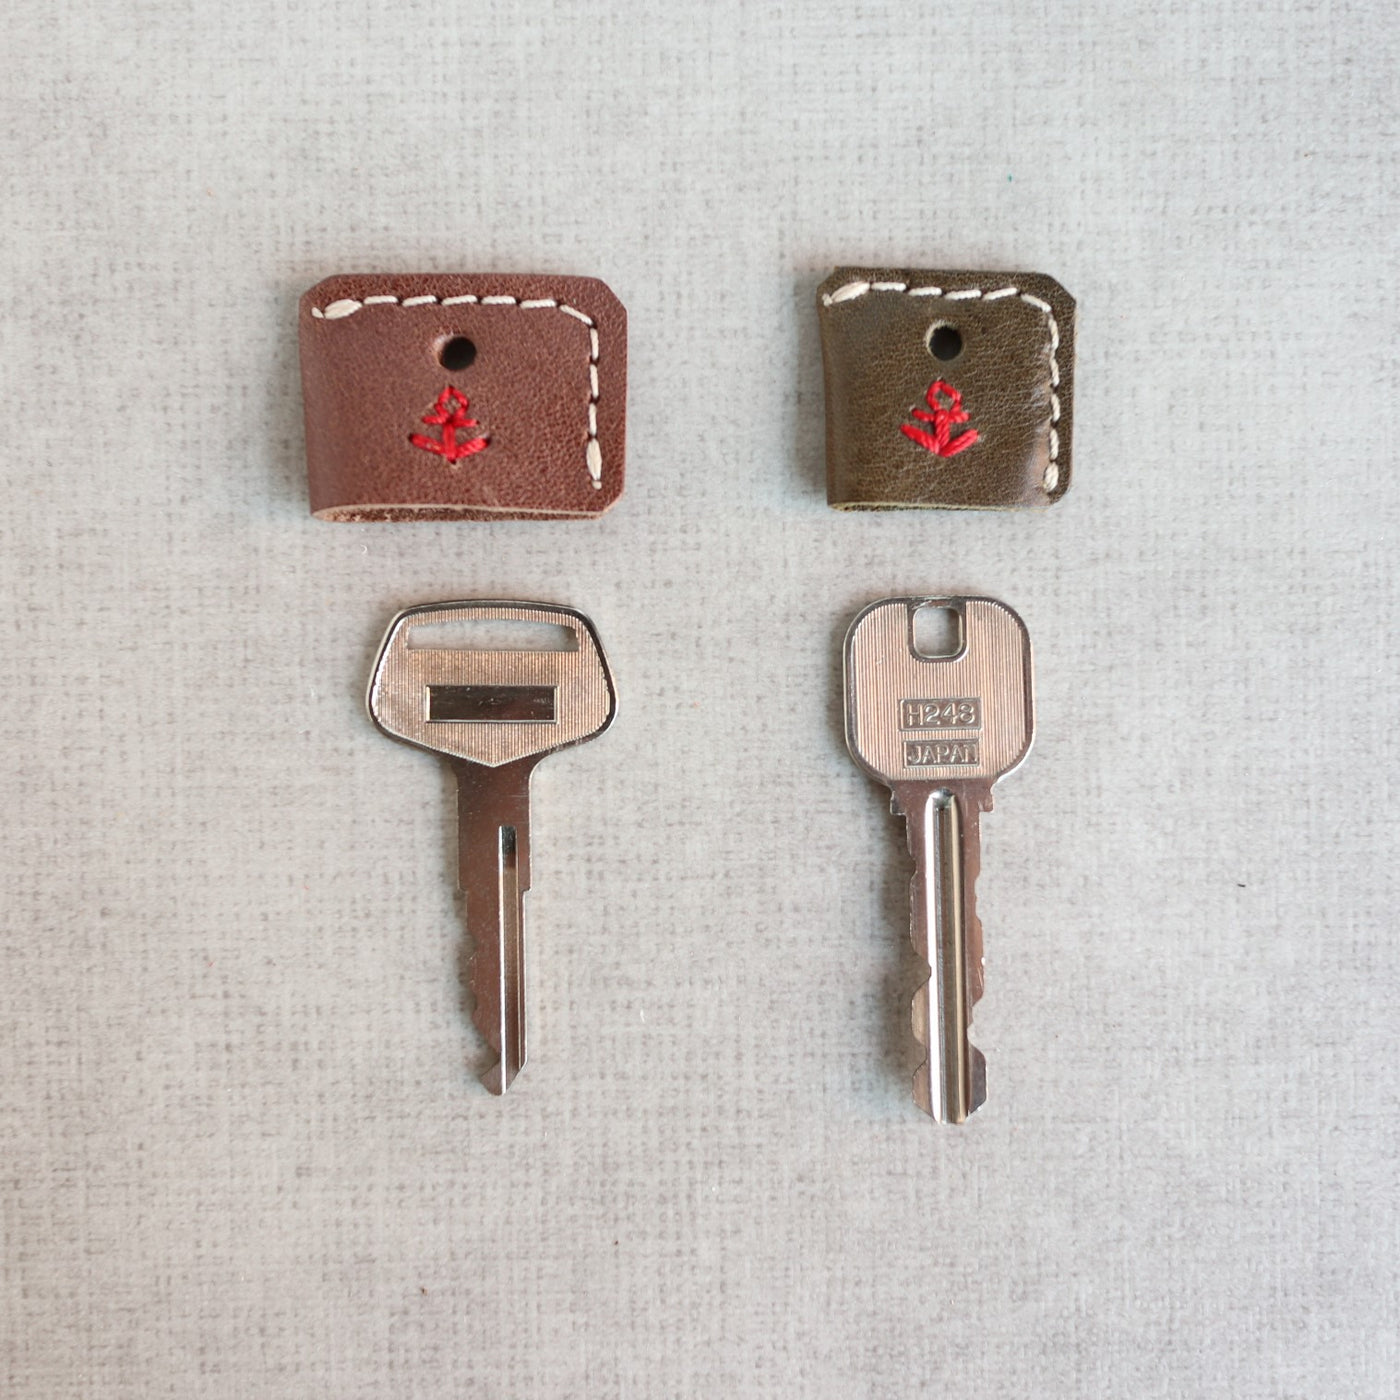 【２種の鍵サイズ】鍵を分別できる便利なキーカバー ac-8